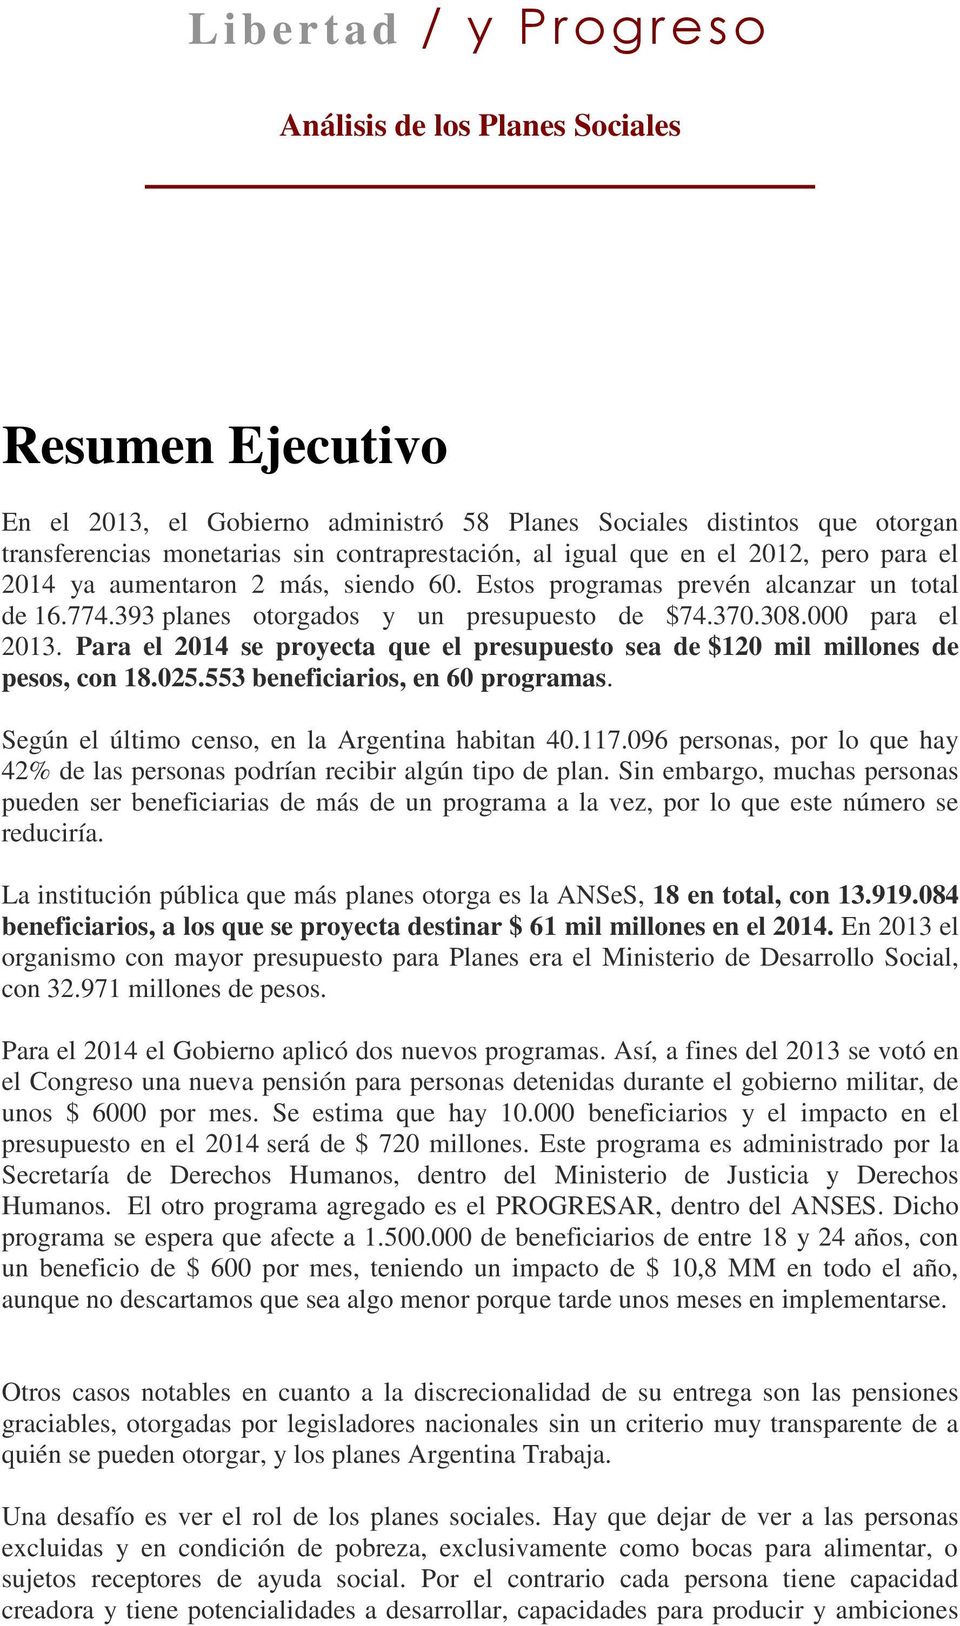 Para el 2014 se proyecta que el presupuesto sea de $120 mil millones de pesos, con 18.025.553 beneficiarios, en 60 programas. Según el último censo, en la Argentina habitan 40.117.